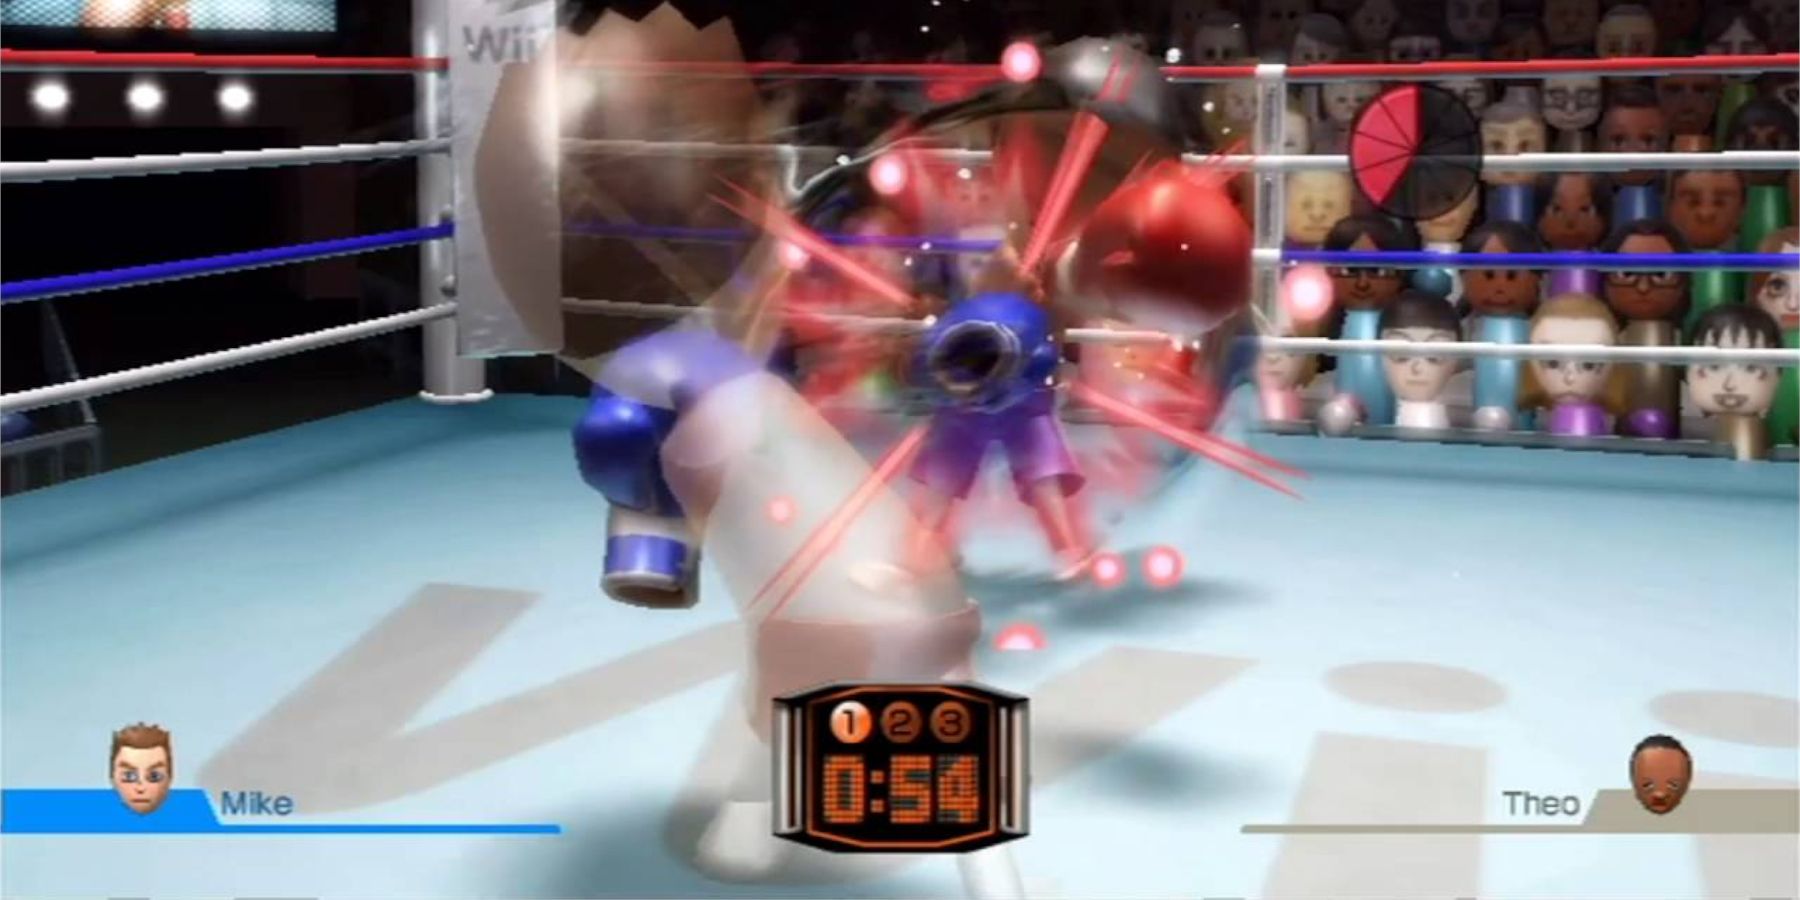 Геймплей двух боксов Miis взят с Wii Sports.